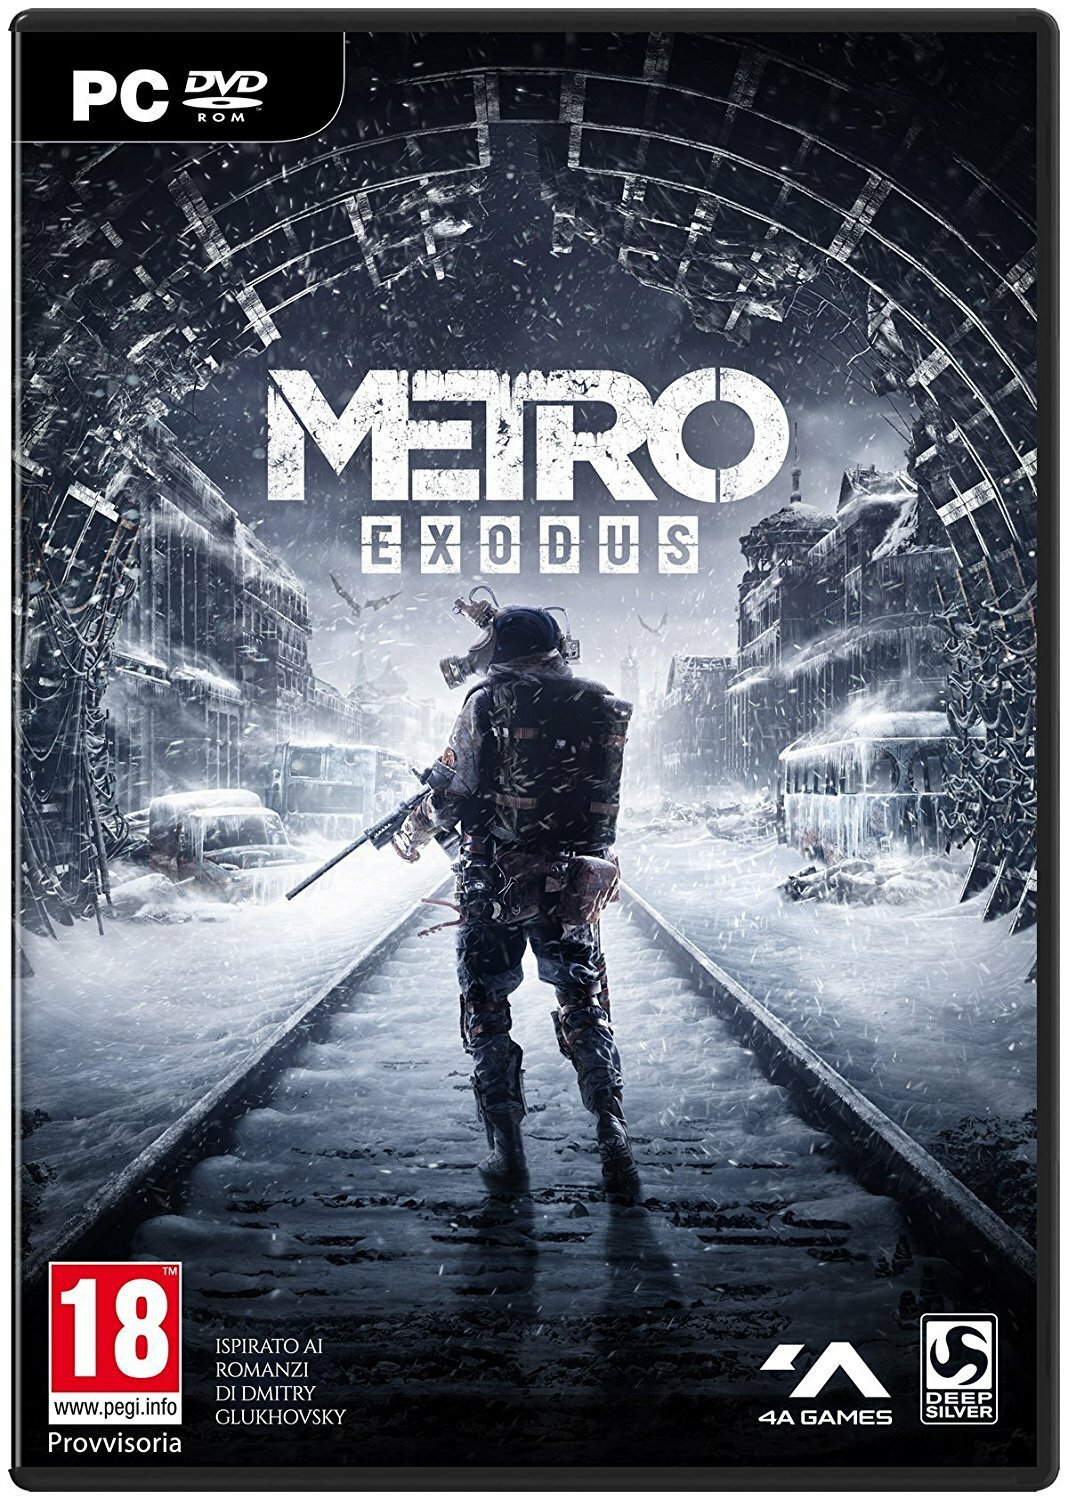 Metro Exodus, il nuovo capitolo della saga 4A Games